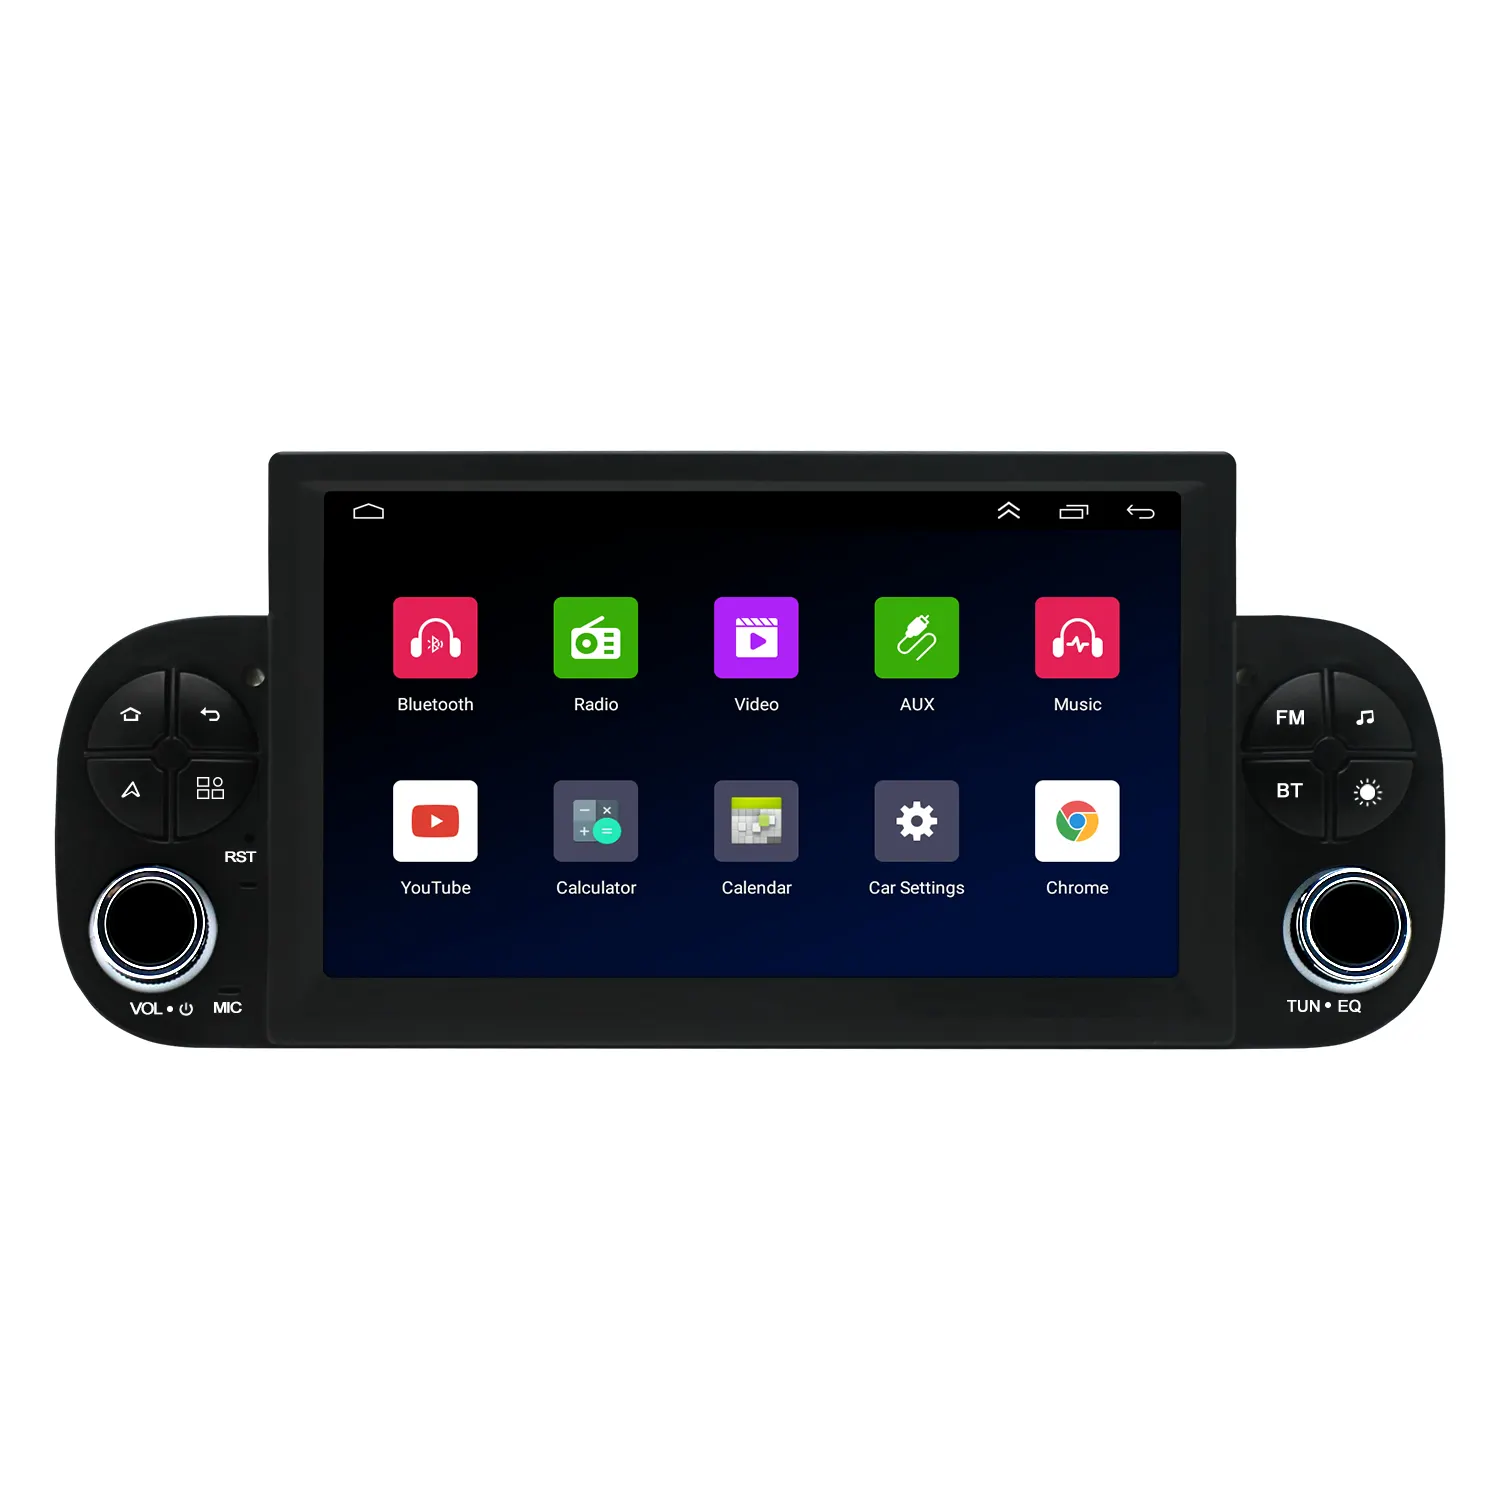 Vente chaude voiture multimédia lecteur DVD 7 pouces Android écran tactile autoradio pour FIAT PANDA 2013-2020